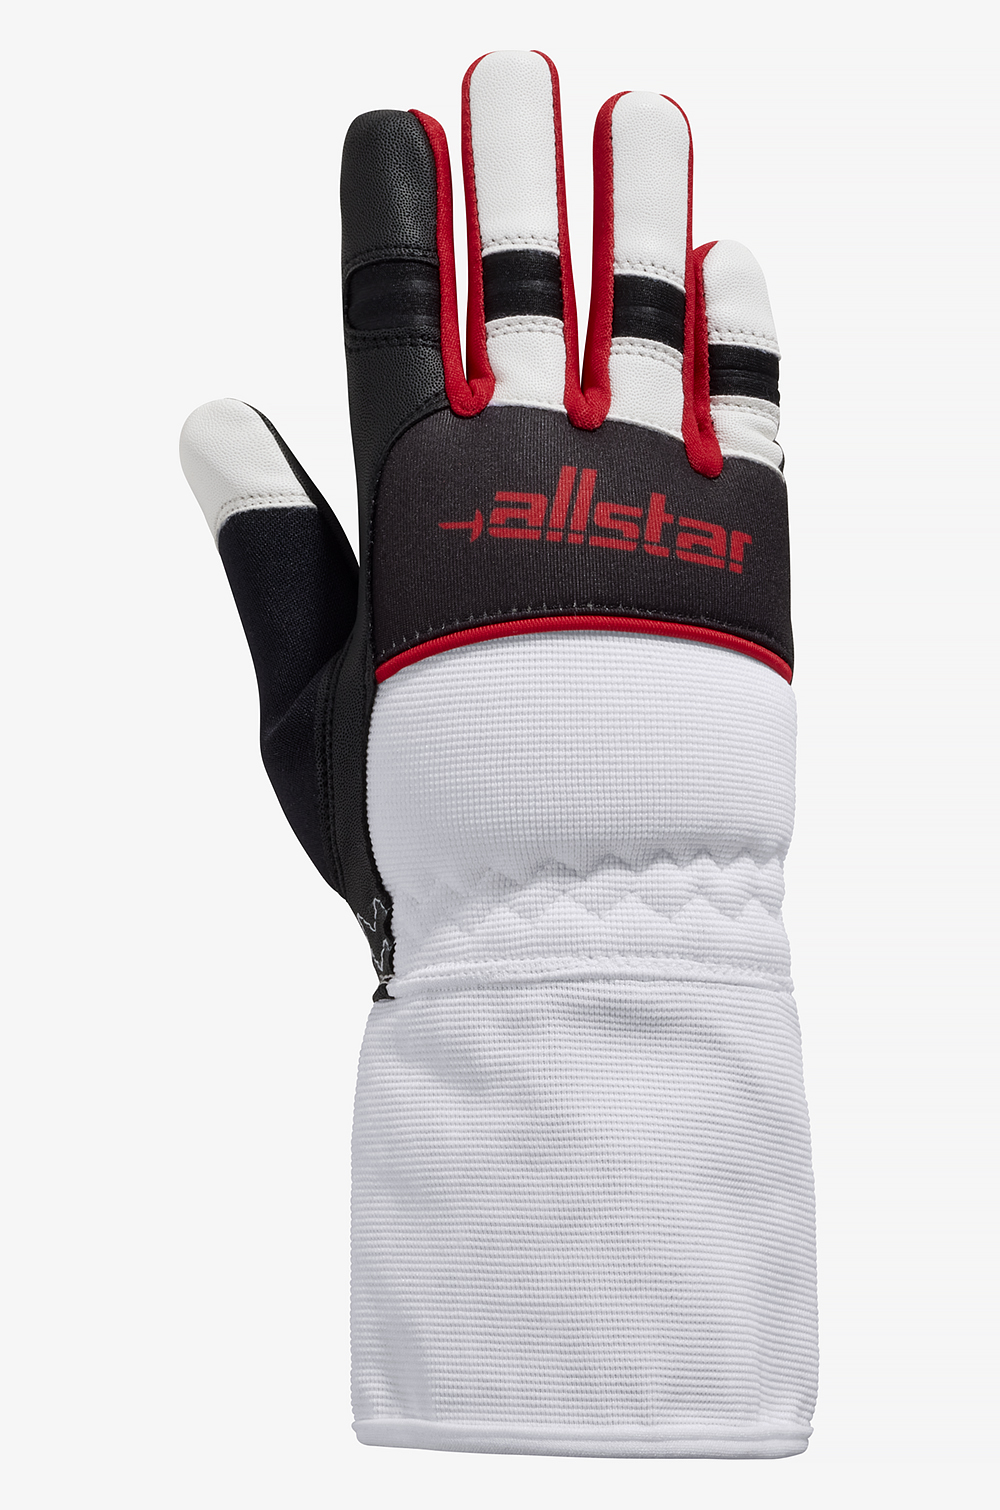 Agility-X Junior Glove